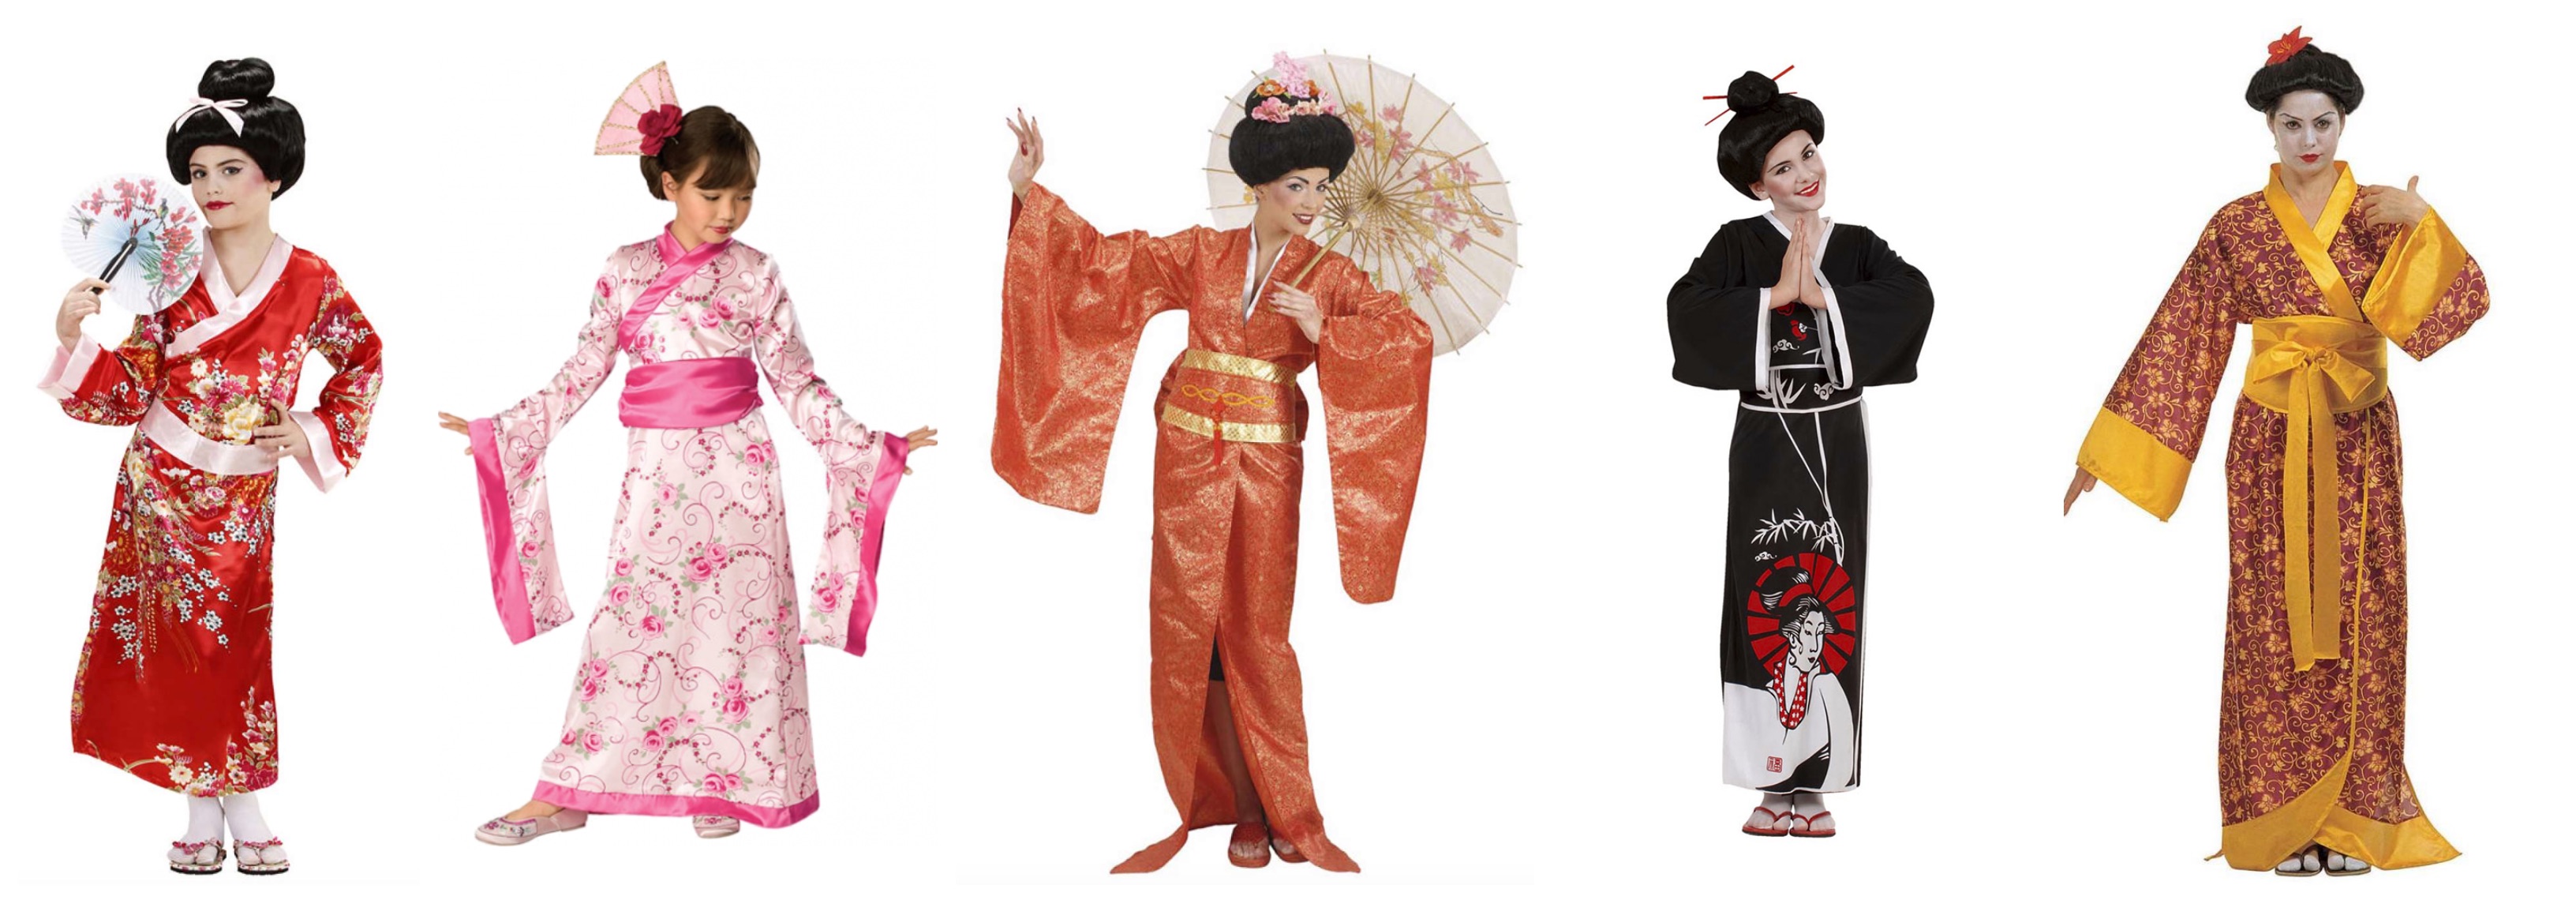 geisha kostume - Geisha kostume til børn og voksne